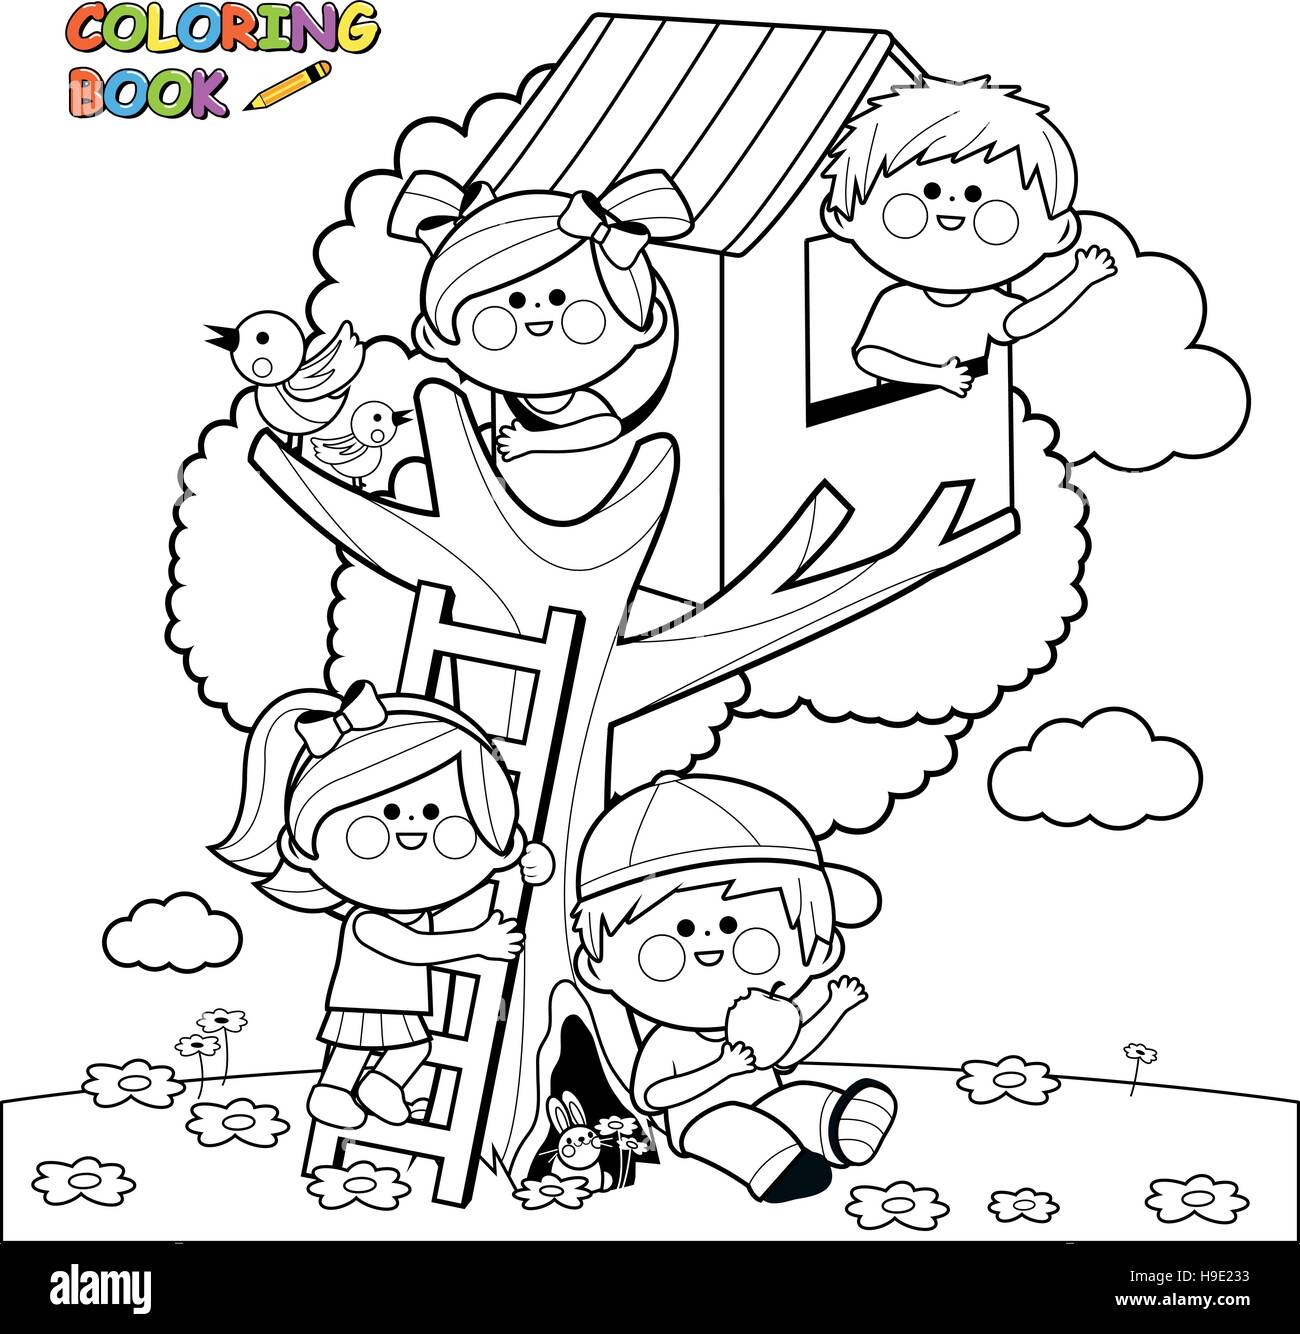 Bambini che giocano in un albero di casa libro da colorare pagina Immagine  e Vettoriale - Alamy